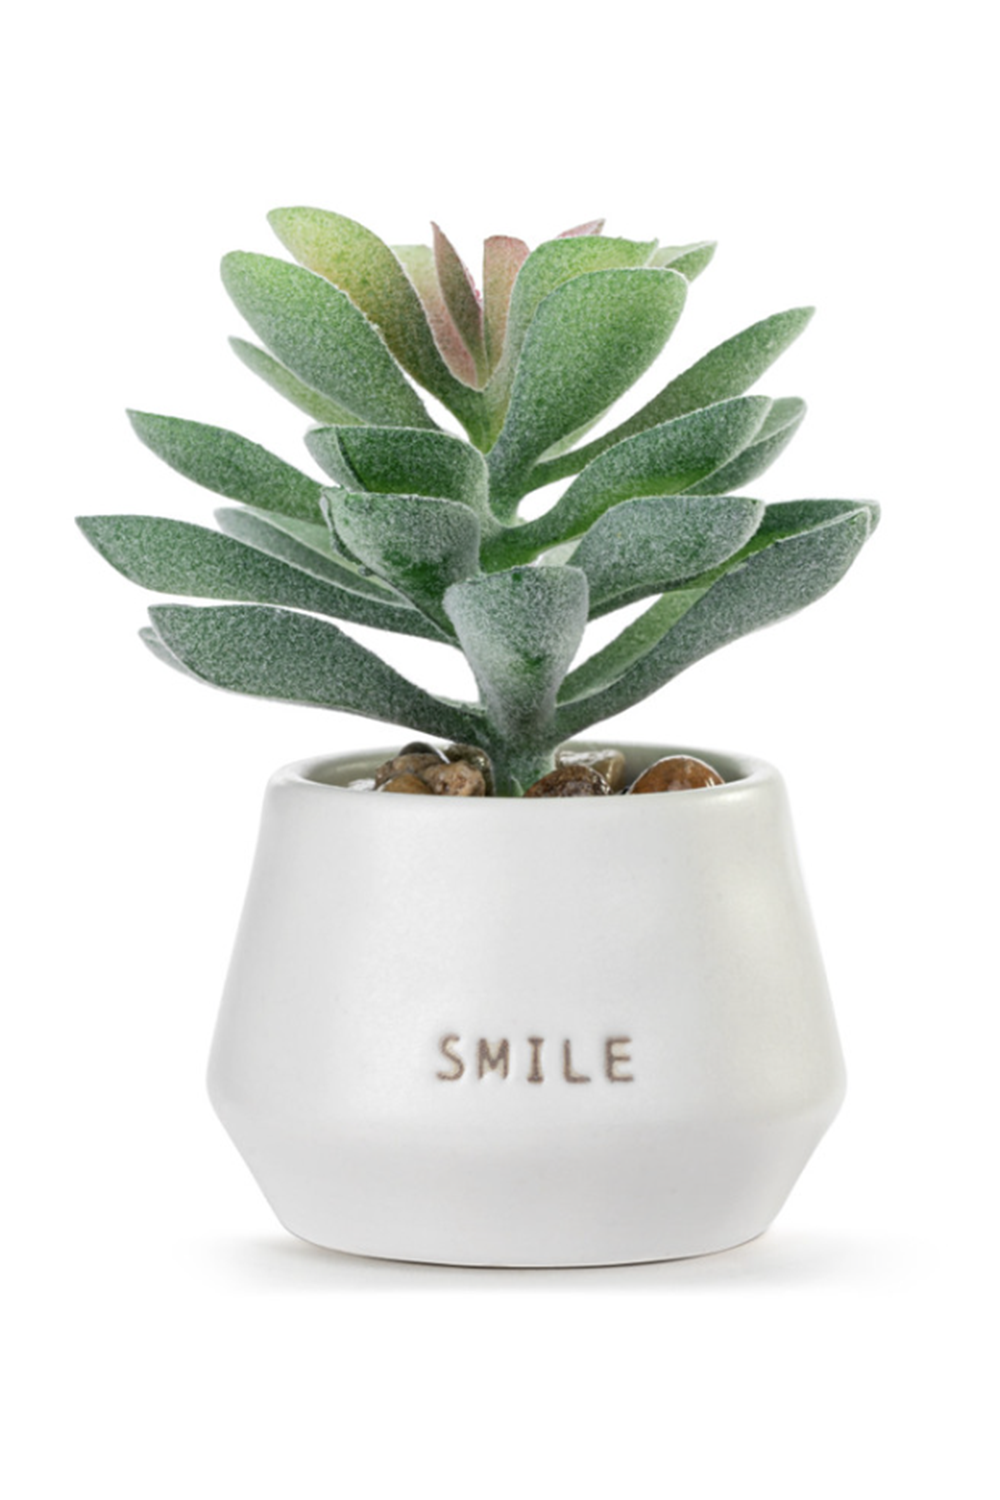 Mini Succulent - Smile